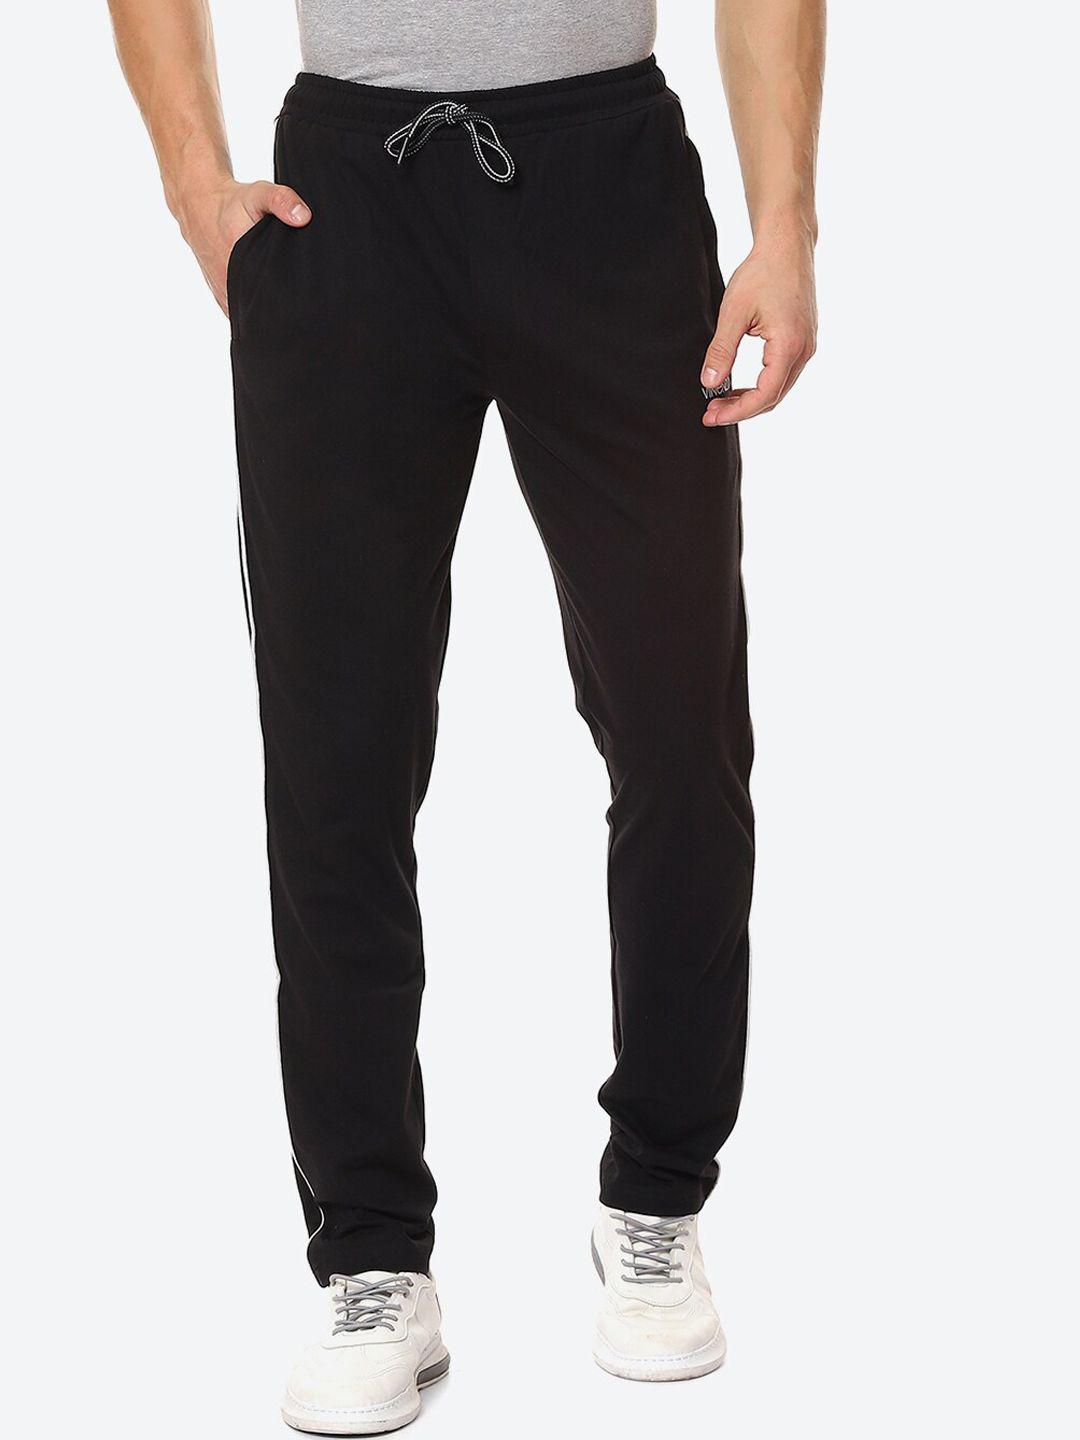 vinenzia-men-black-solid-pure-cotton-track-pants